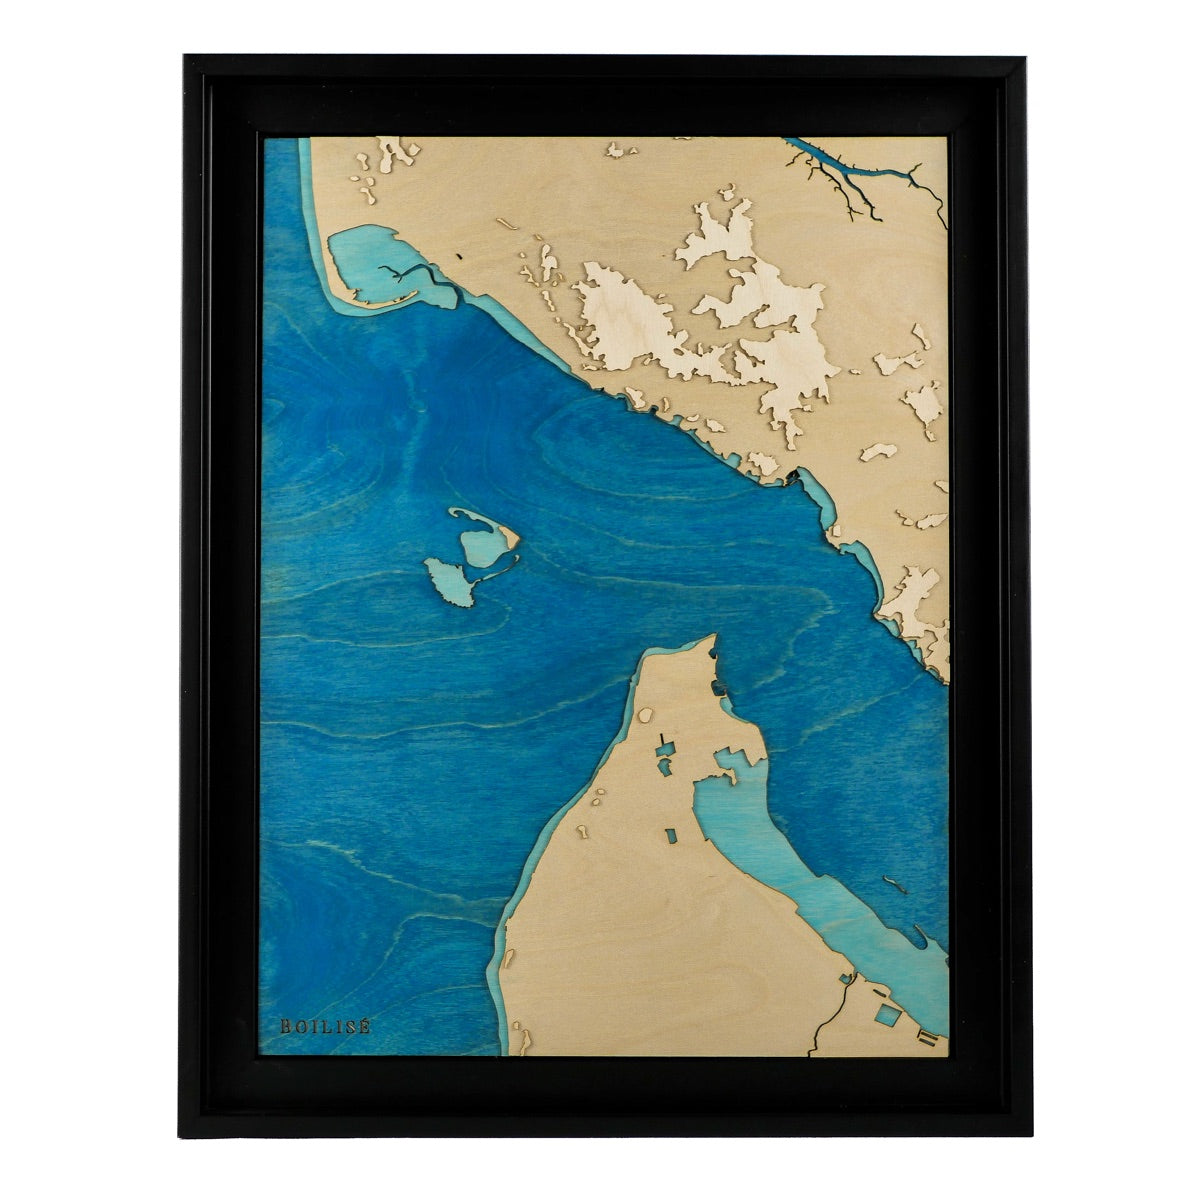 Carte en bois de l'estuaire de la Gironde, caisse américaine noire et océan bleu marine